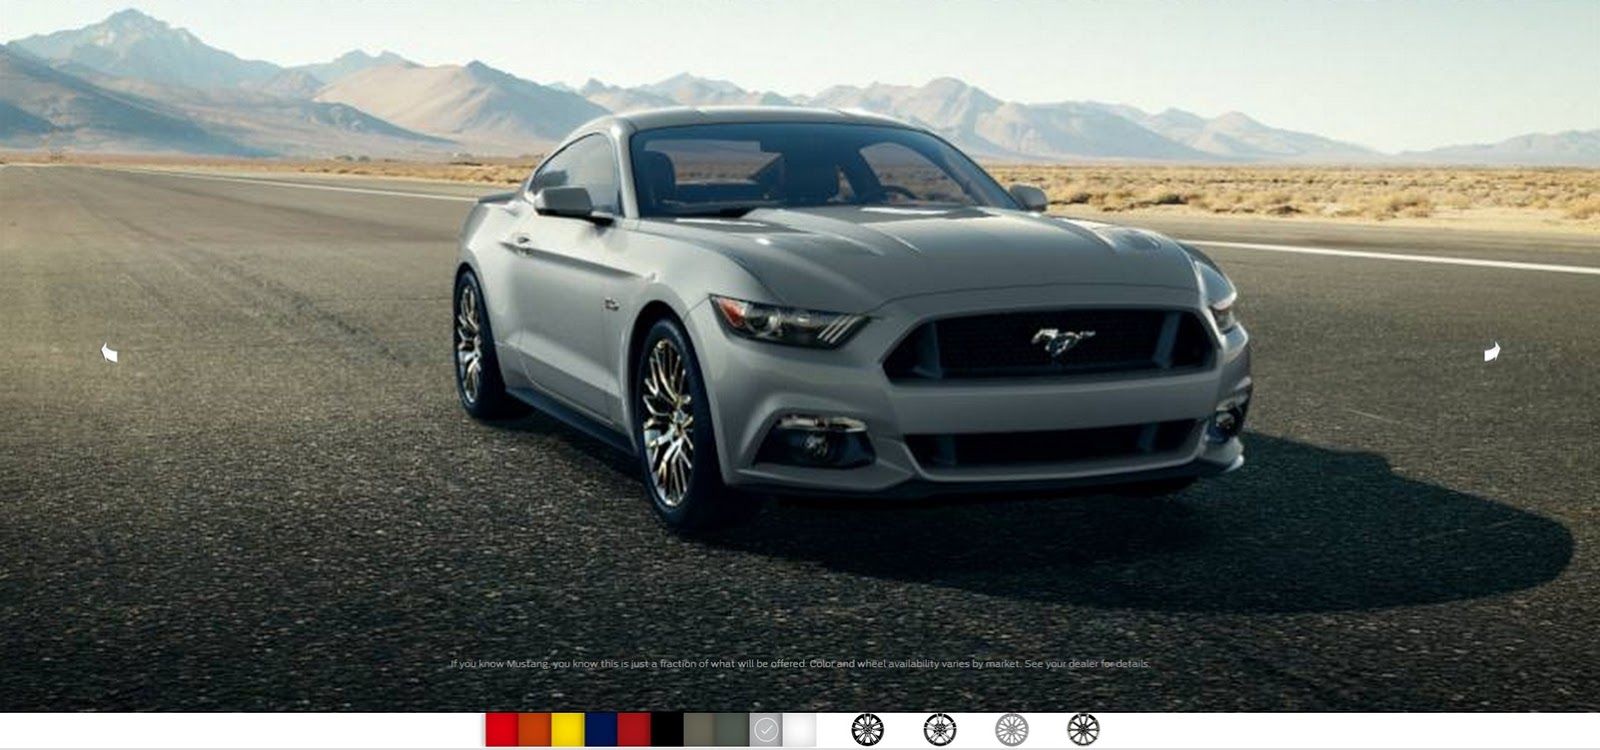 2015-Ford-Mustang-Photos-3%25255B3%25255D.jpg